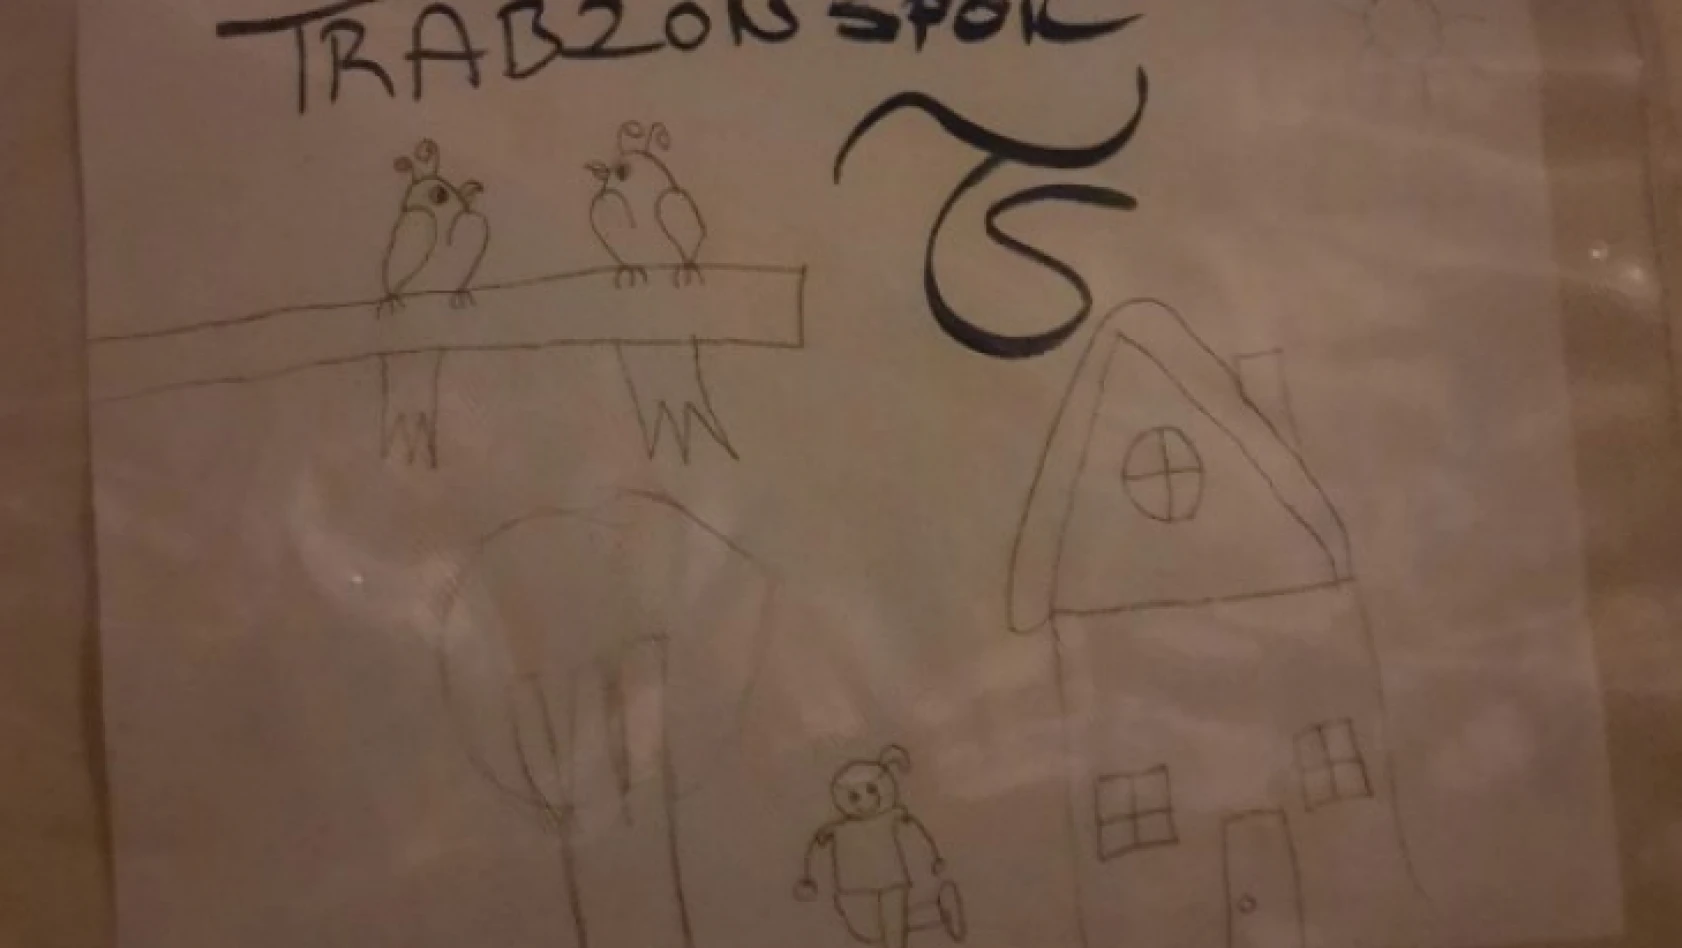 Depremzede çocuğun çizdiği resim Trabzonspor'un dikkatini çekti, Bakasetas imzalı forma gönderdi